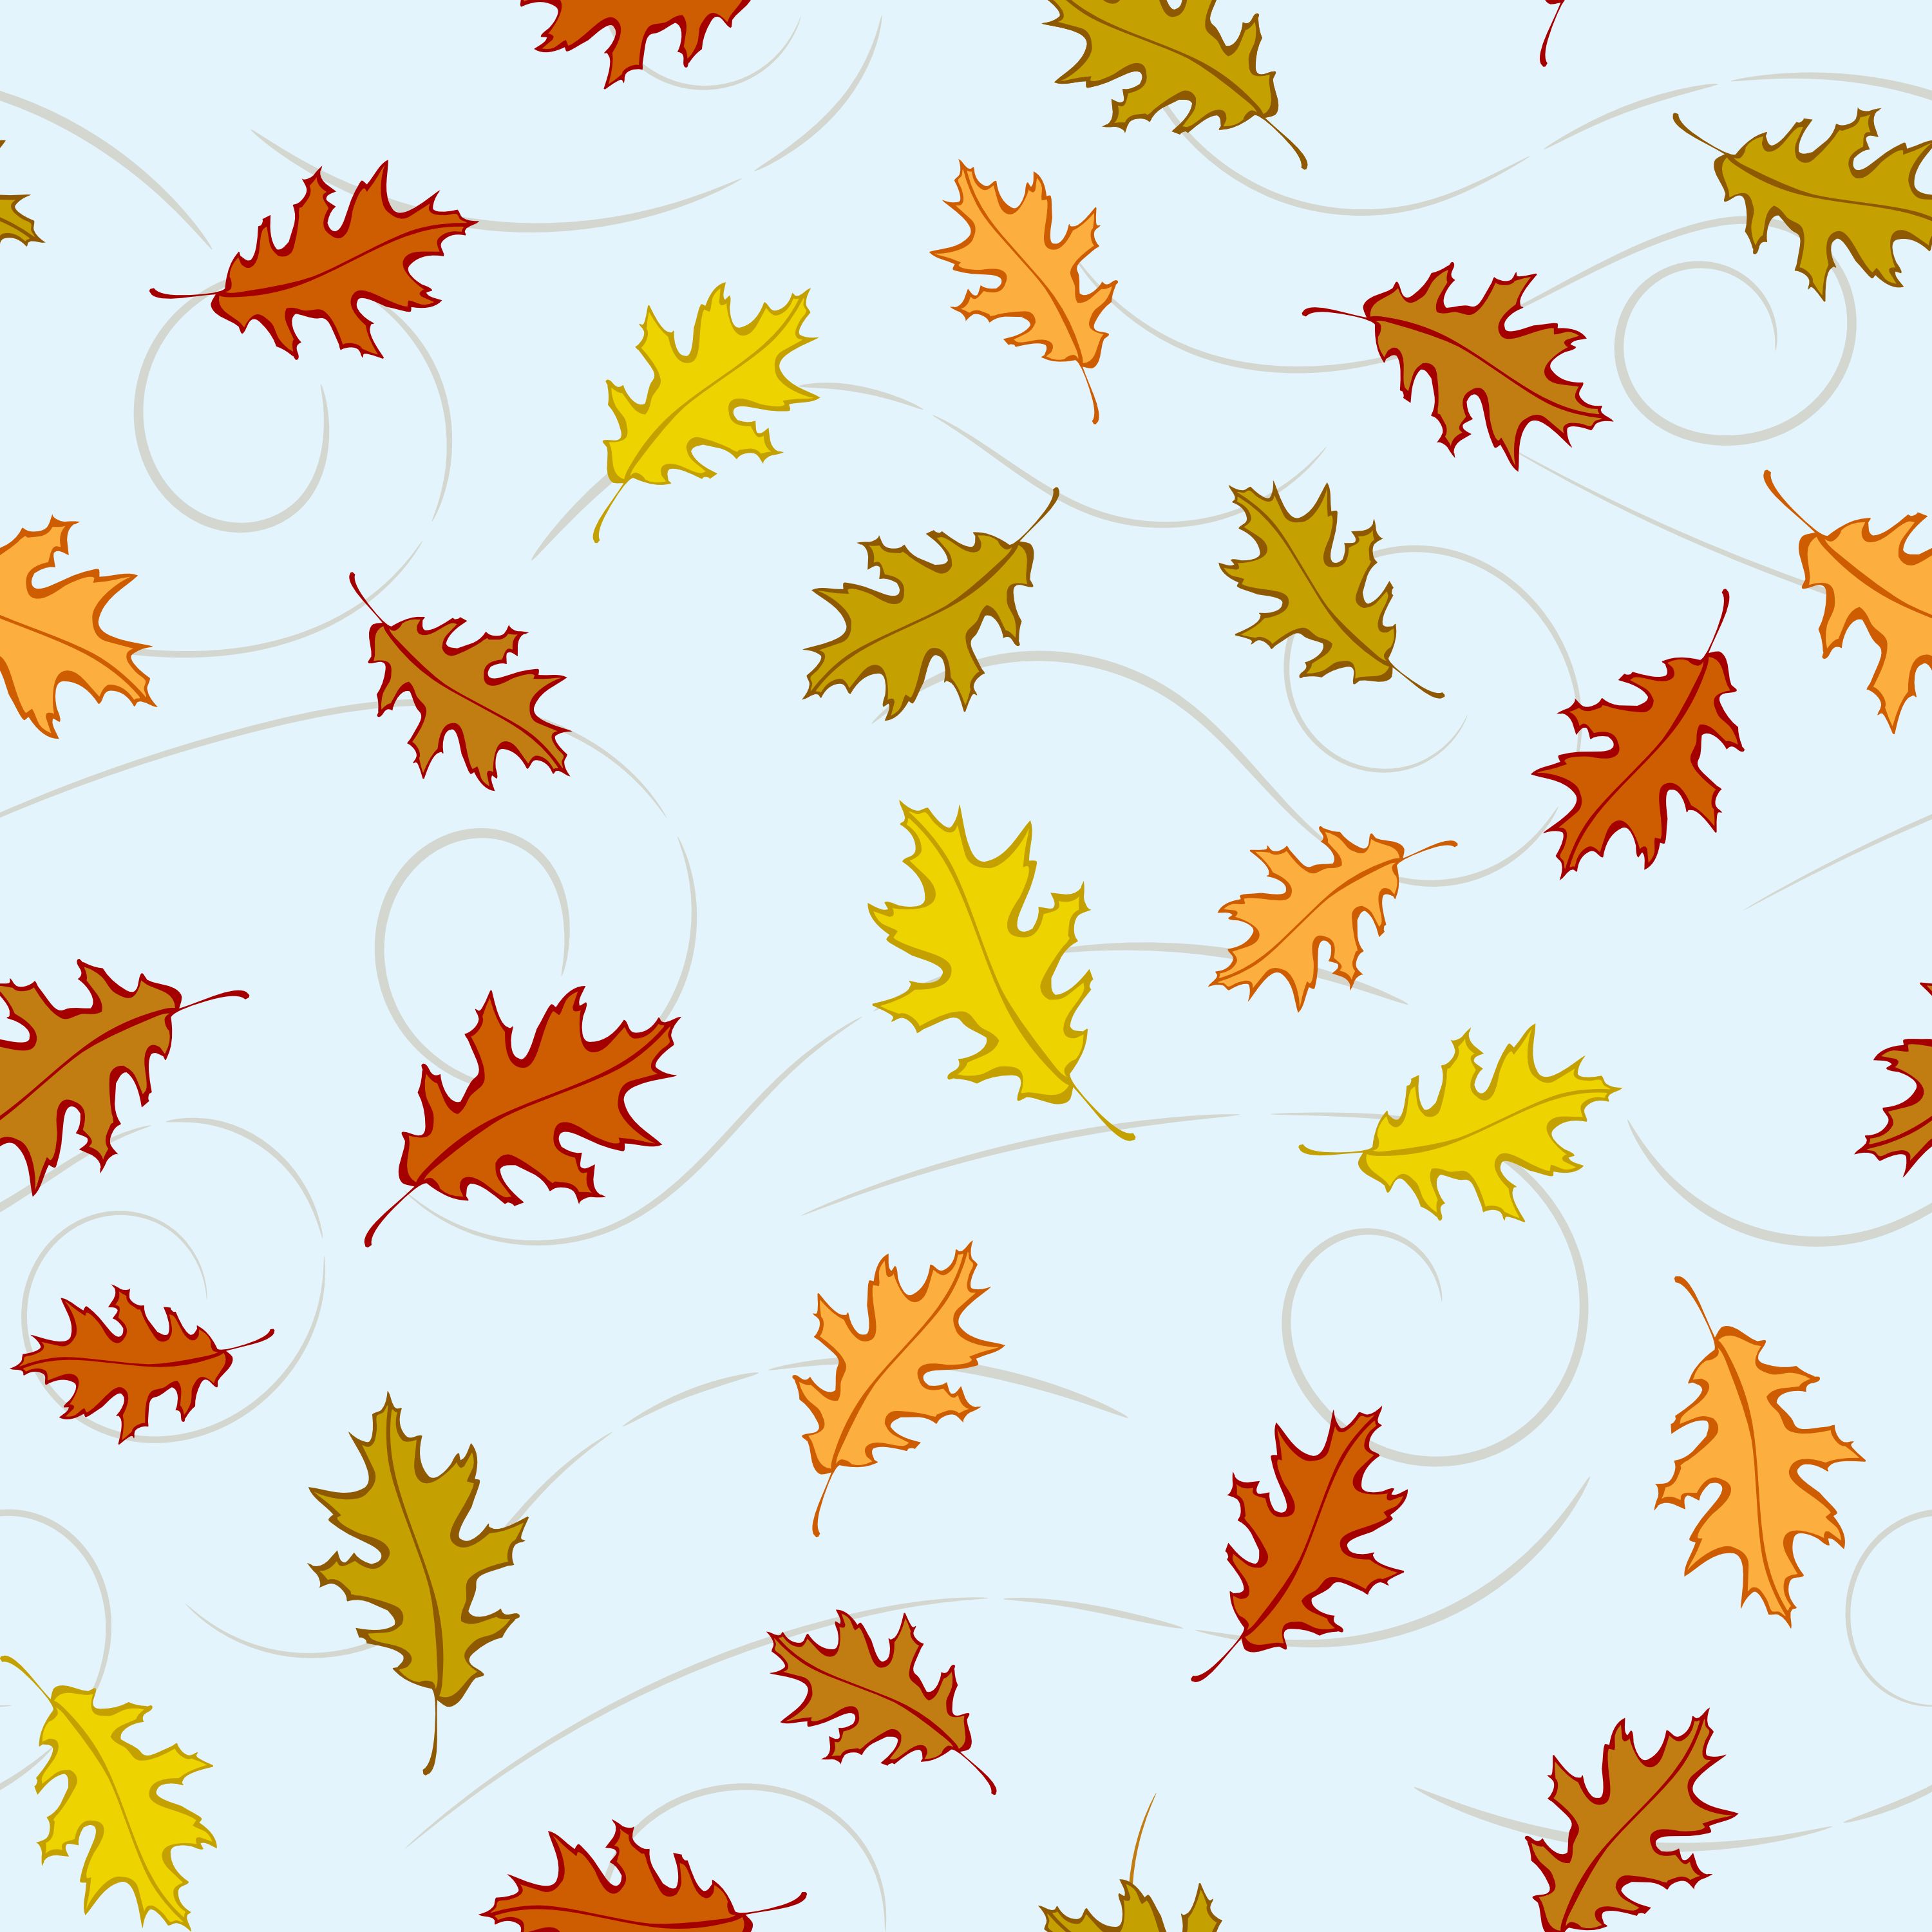 Скачать обои бесплатно Опавший, Осенний, Текстура, Текстуры, Узоры, Листья, Осень картинка на рабочий стол ПК